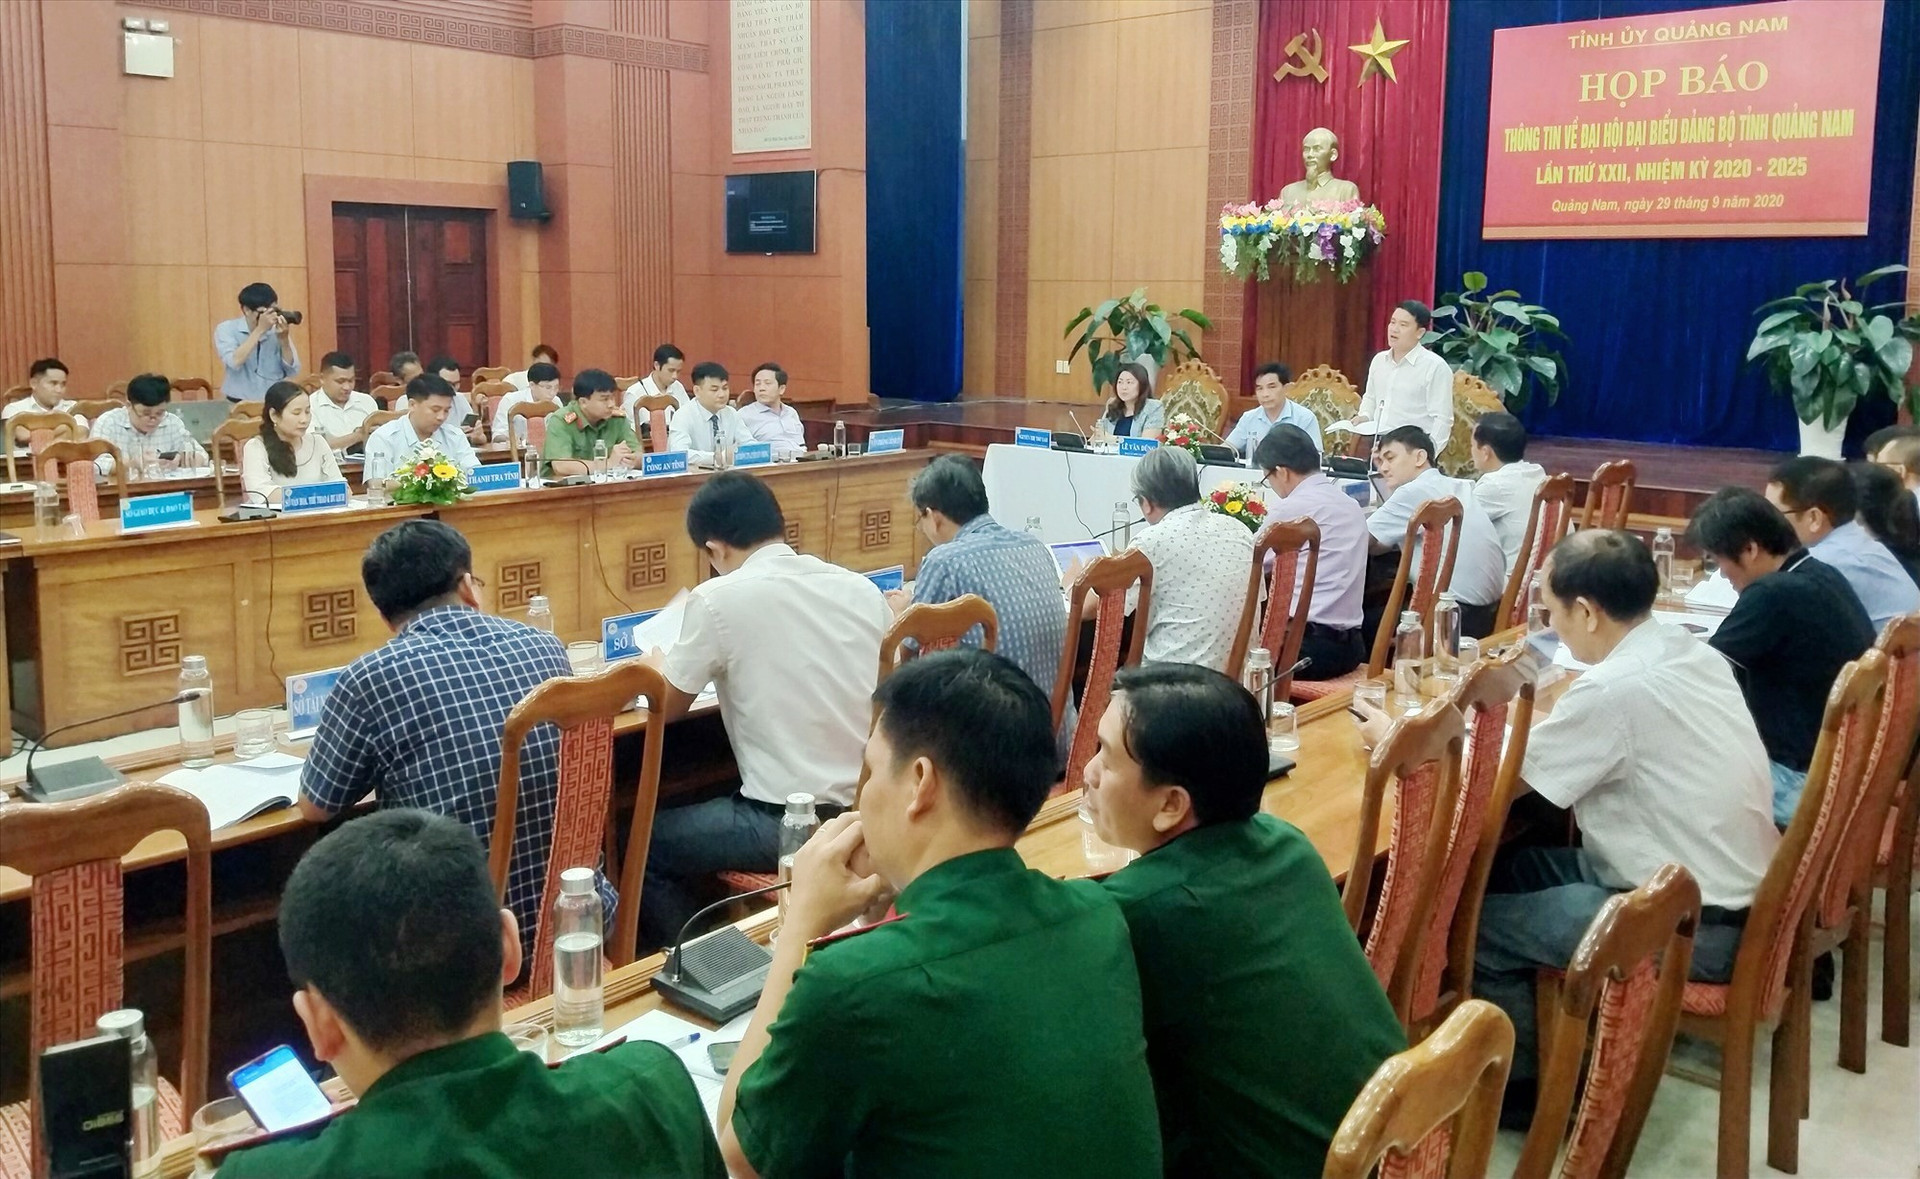 Phó Chủ tịch UBND tỉnh Trần Văn Tân trả lời câu hỏi của các cơ quan báo chí. Ảnh: N.Đ